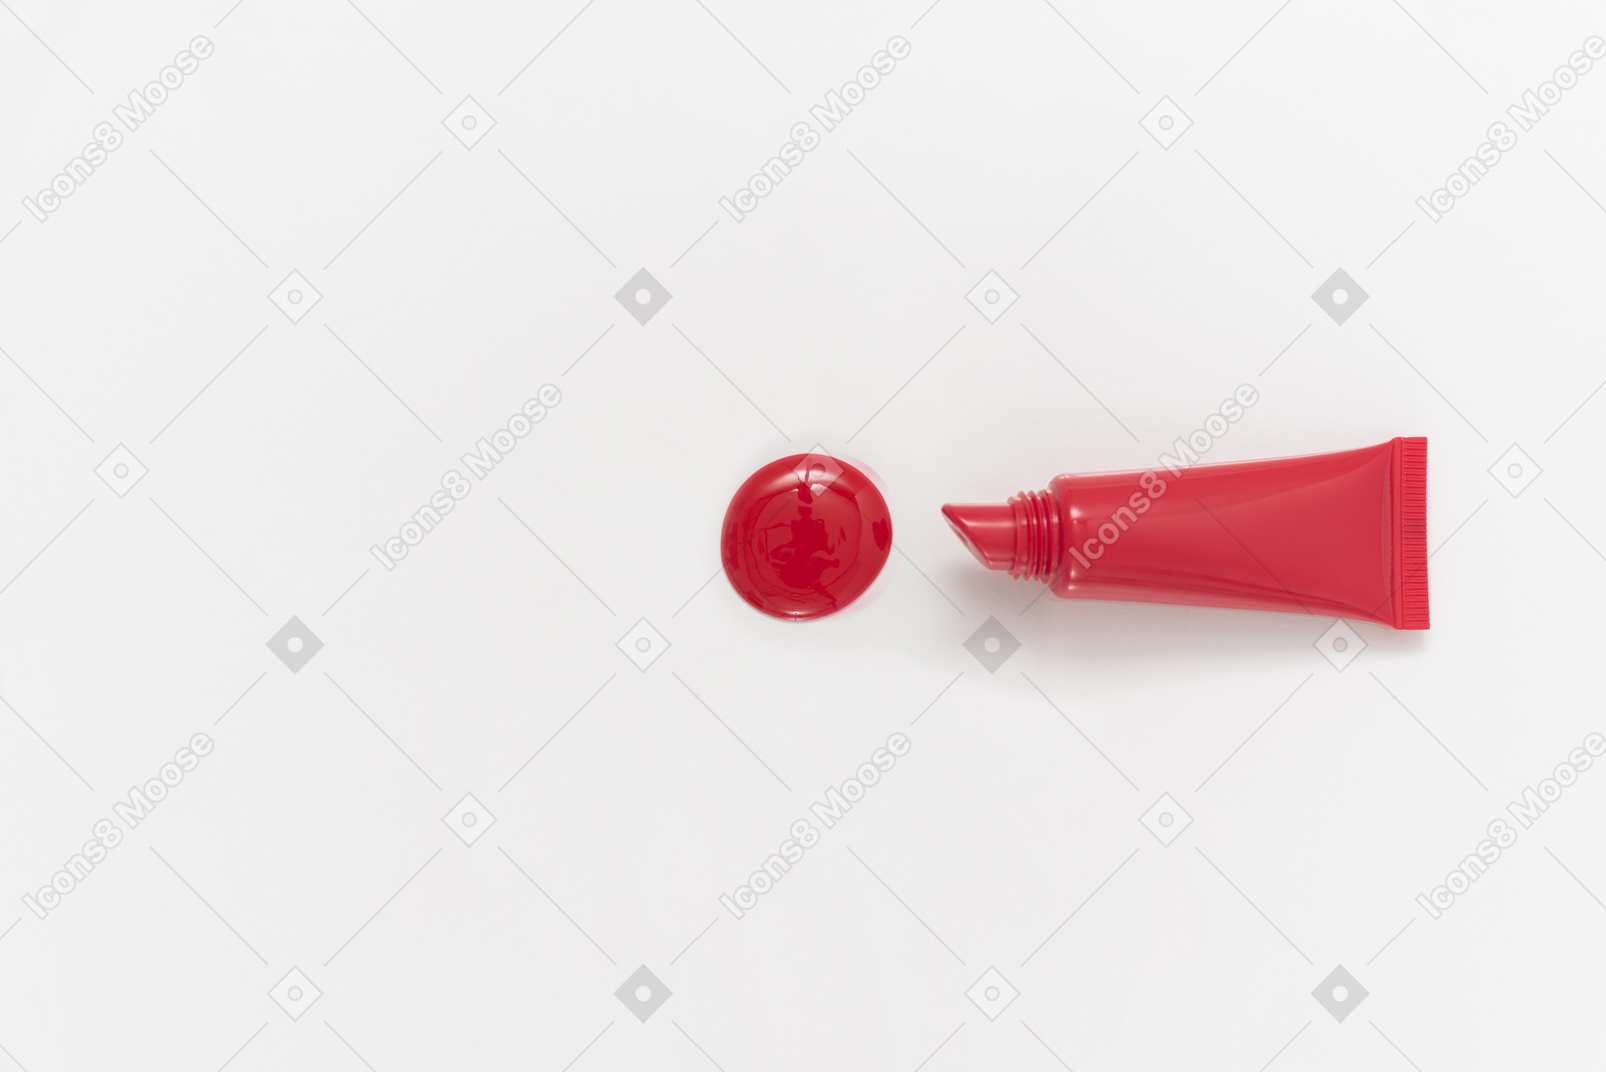 Goccia di rossetto rosso e bottiglia di rossetto su sfondo bianco